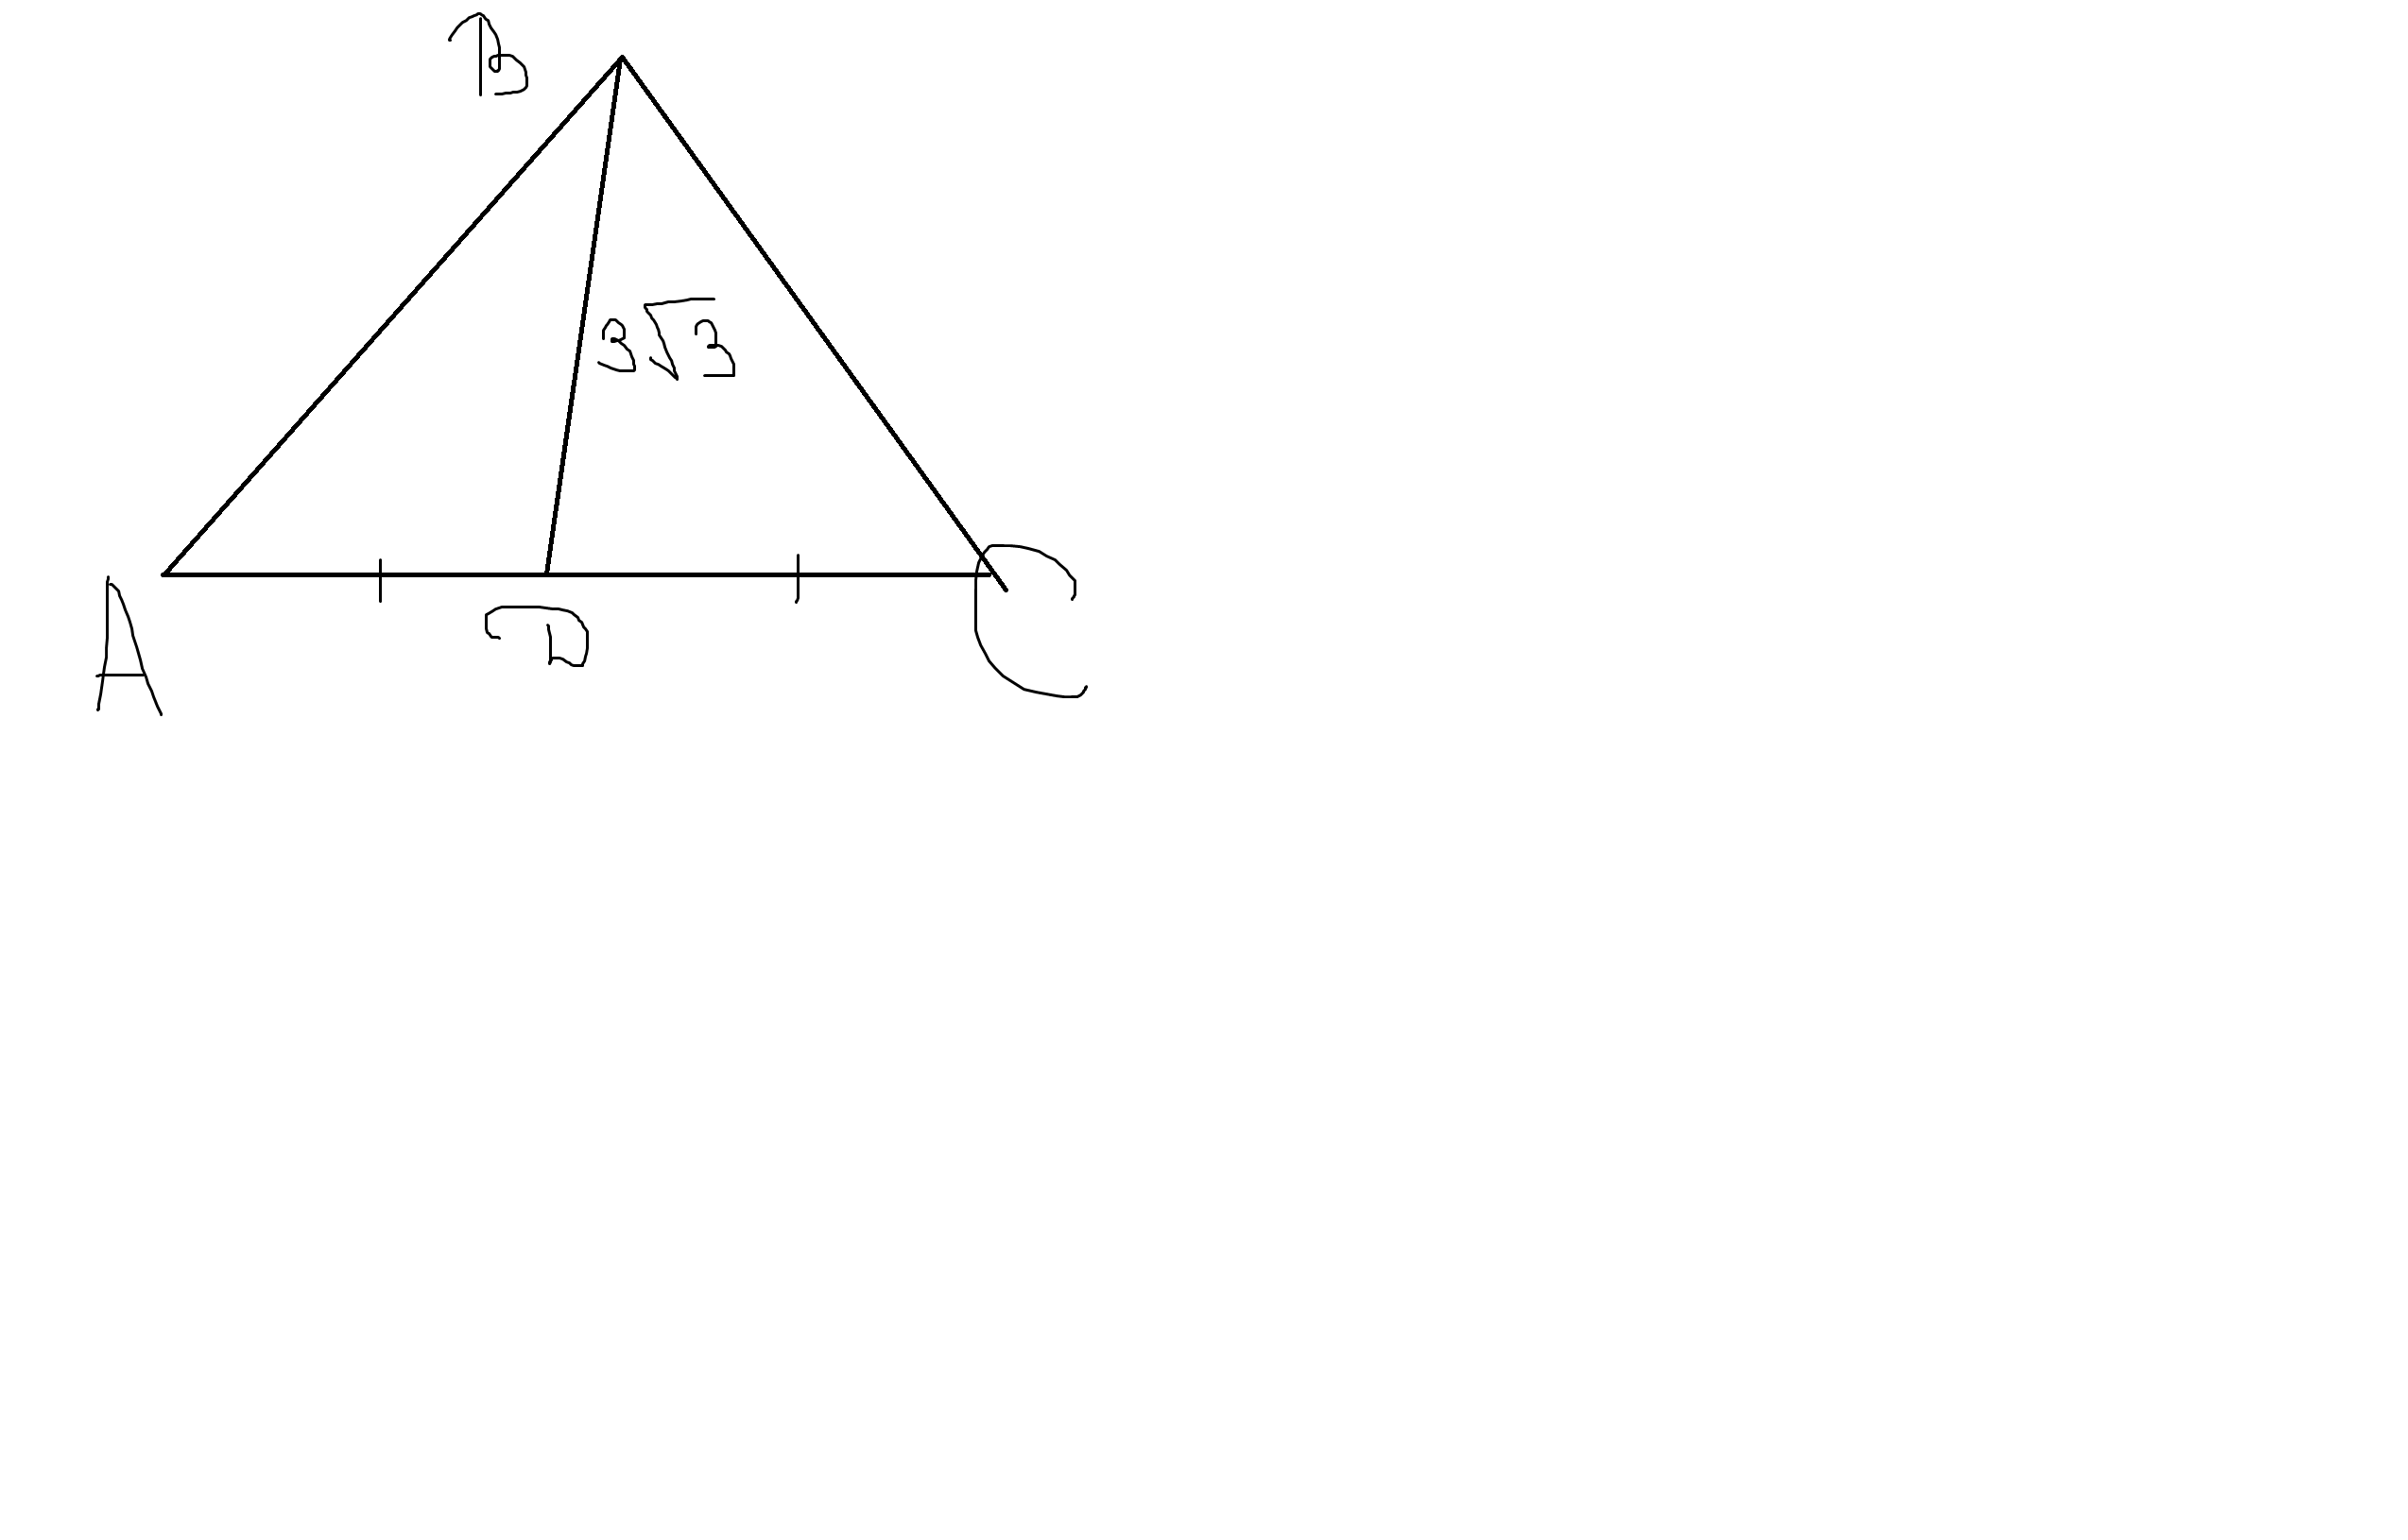 Медиана BD треугольника ABC равна 3√ 3 см и образует с основанием треугольника угол, равнй 60 градусам. Сторона AC равна 4 см. Найдите площадь треугольника.Загрузить png